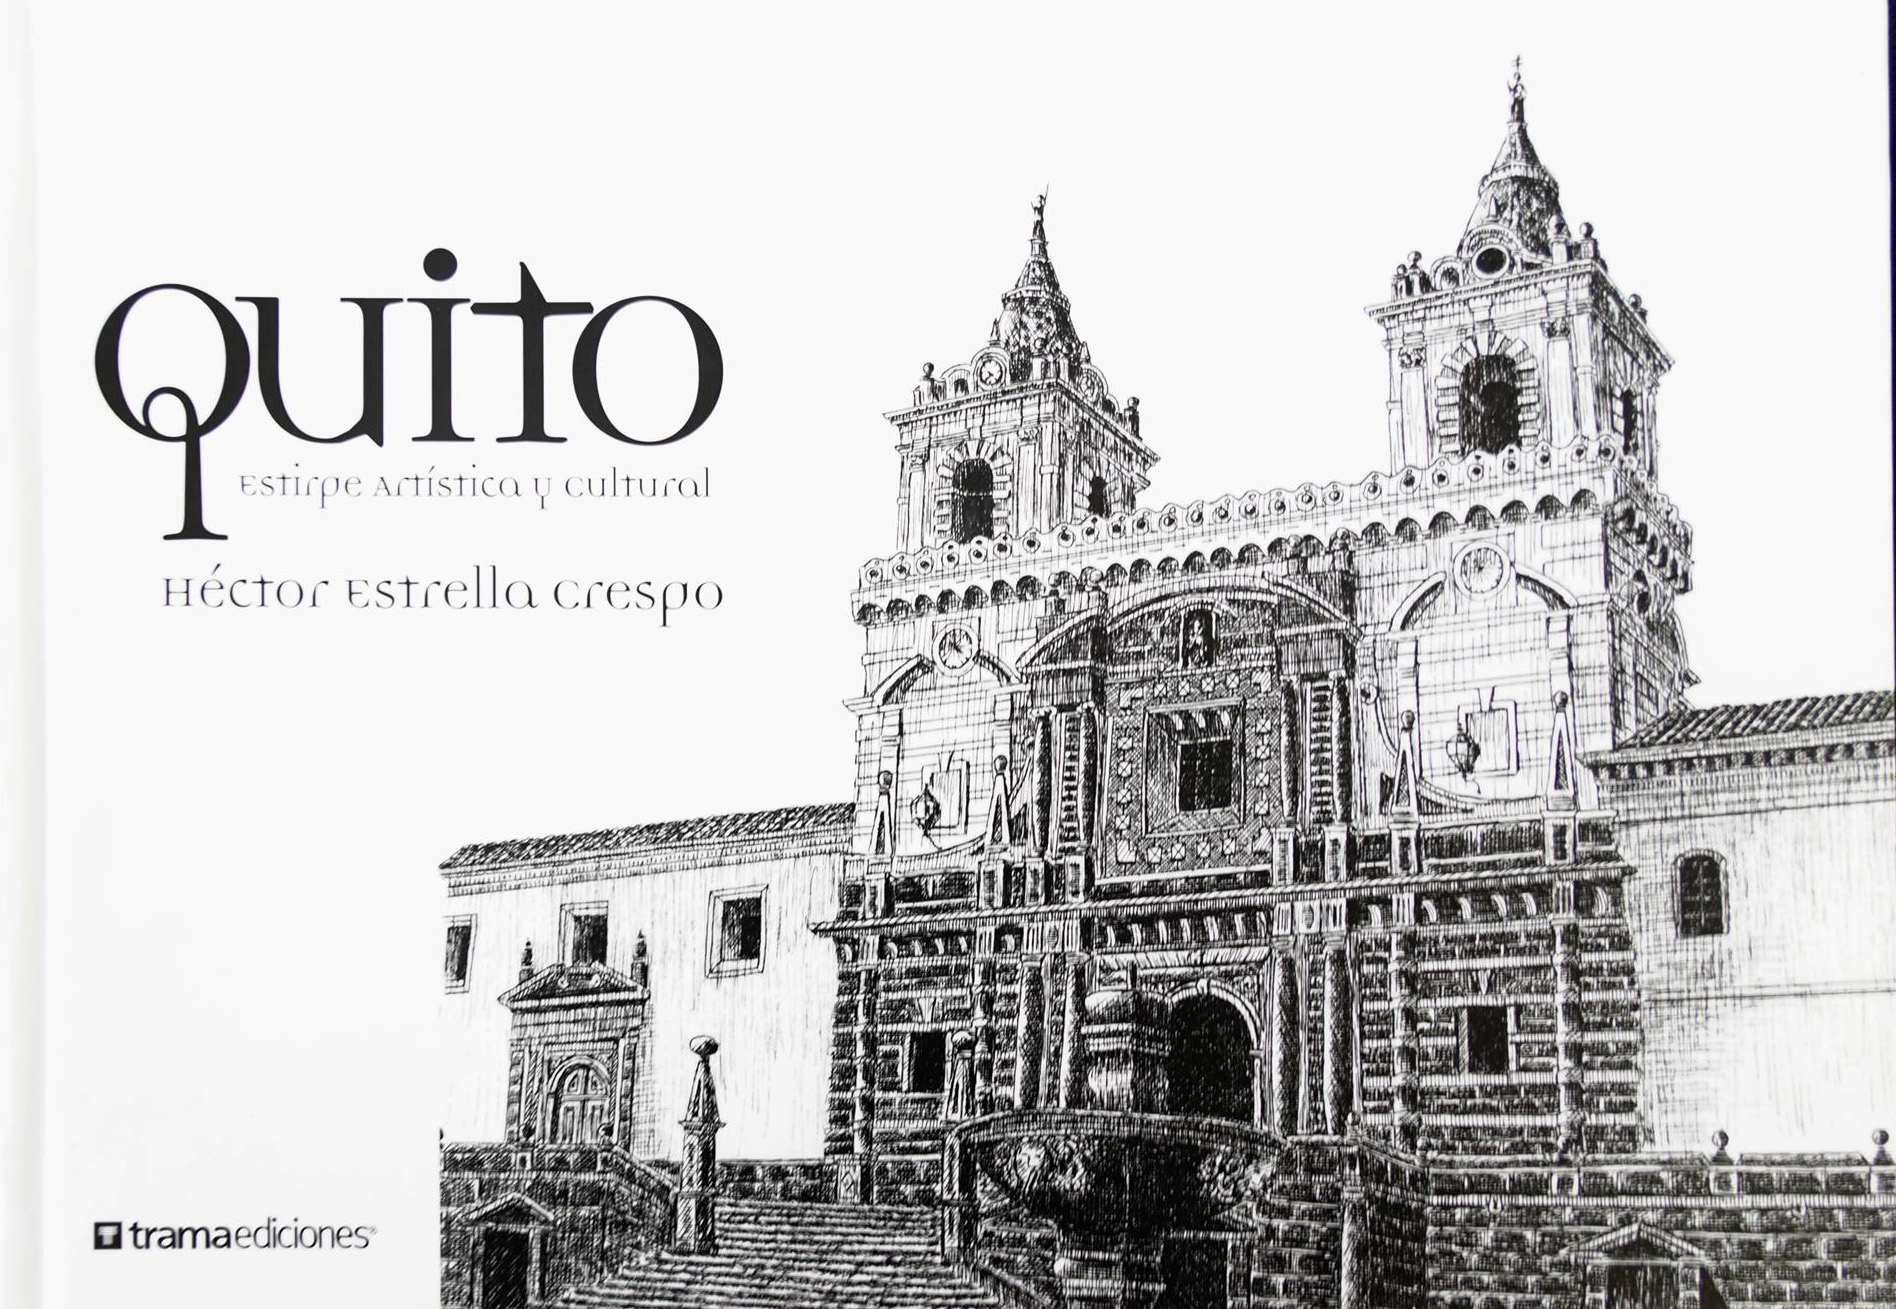 Quito estirpe artística y cultural